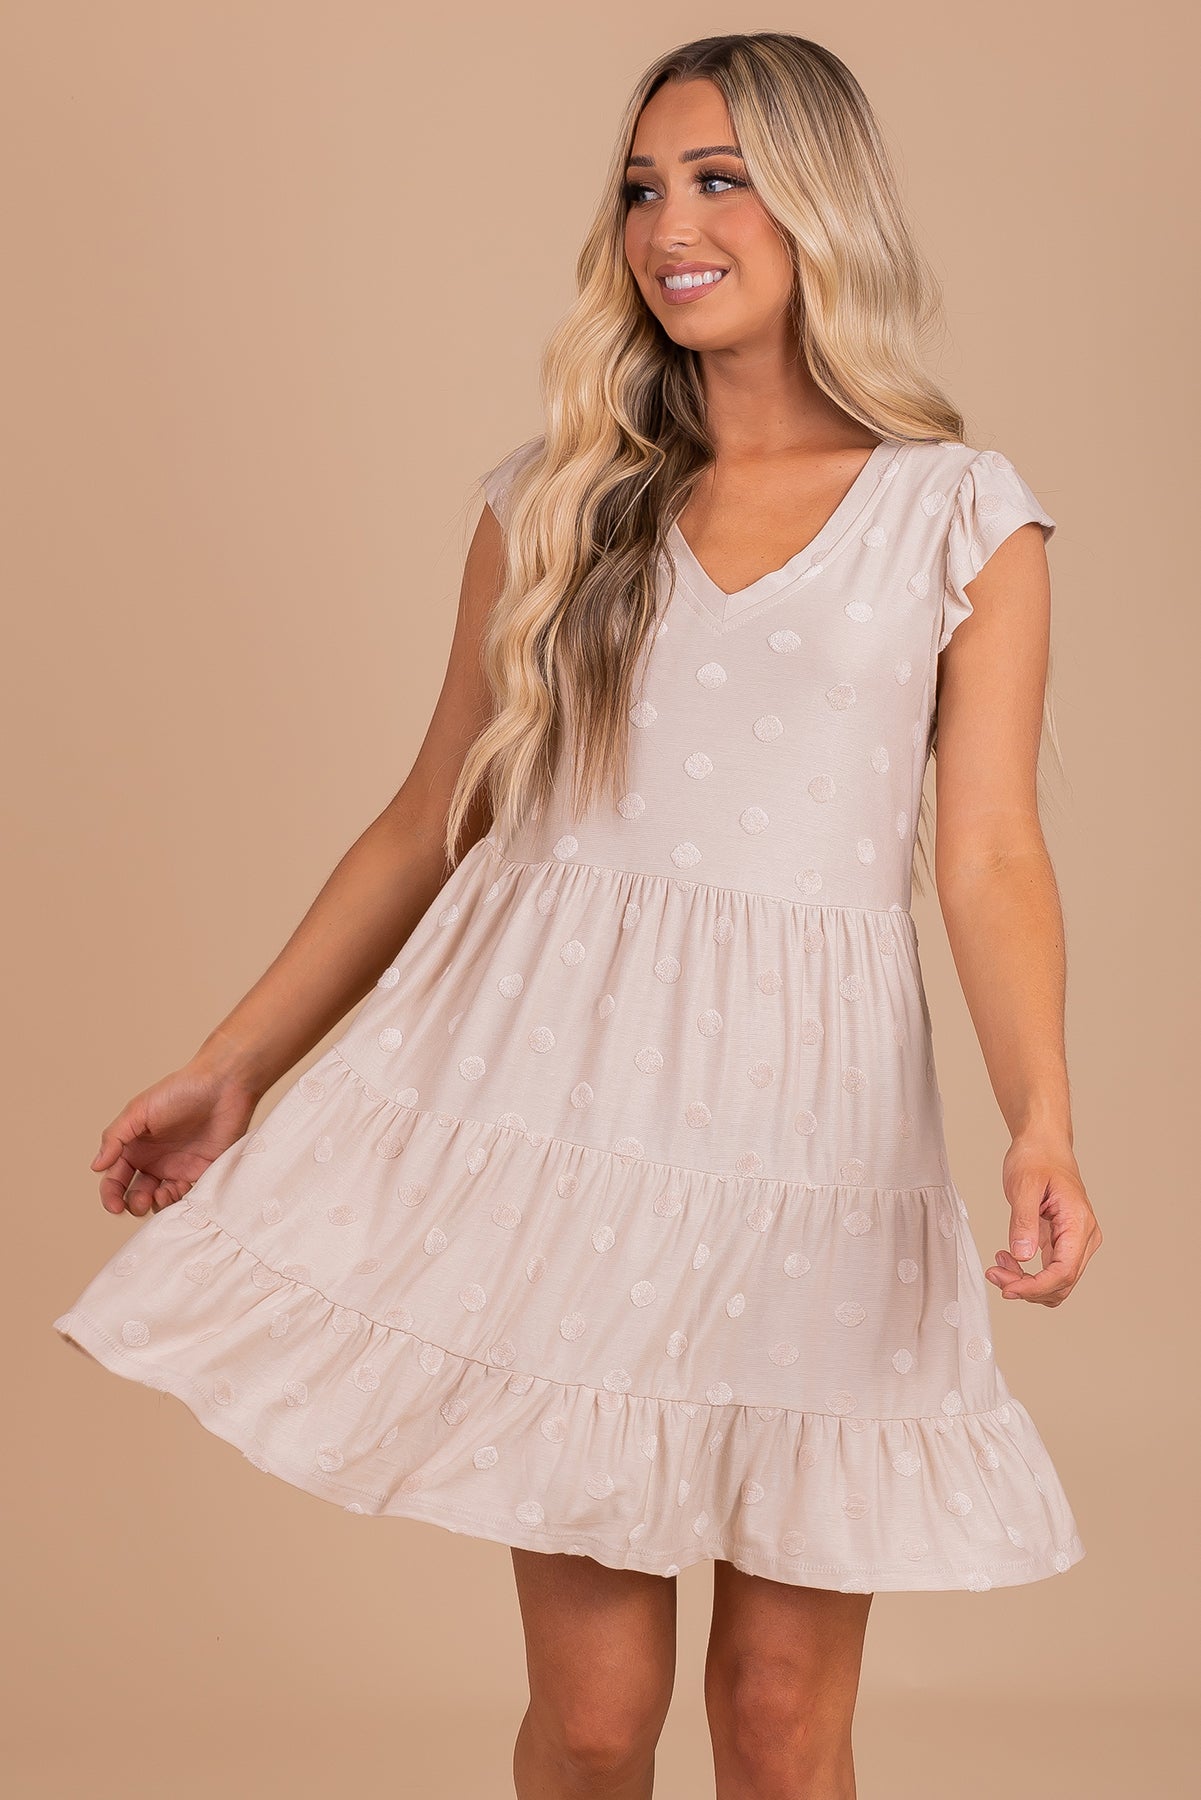 Women's Mini Dress with Polka Dots